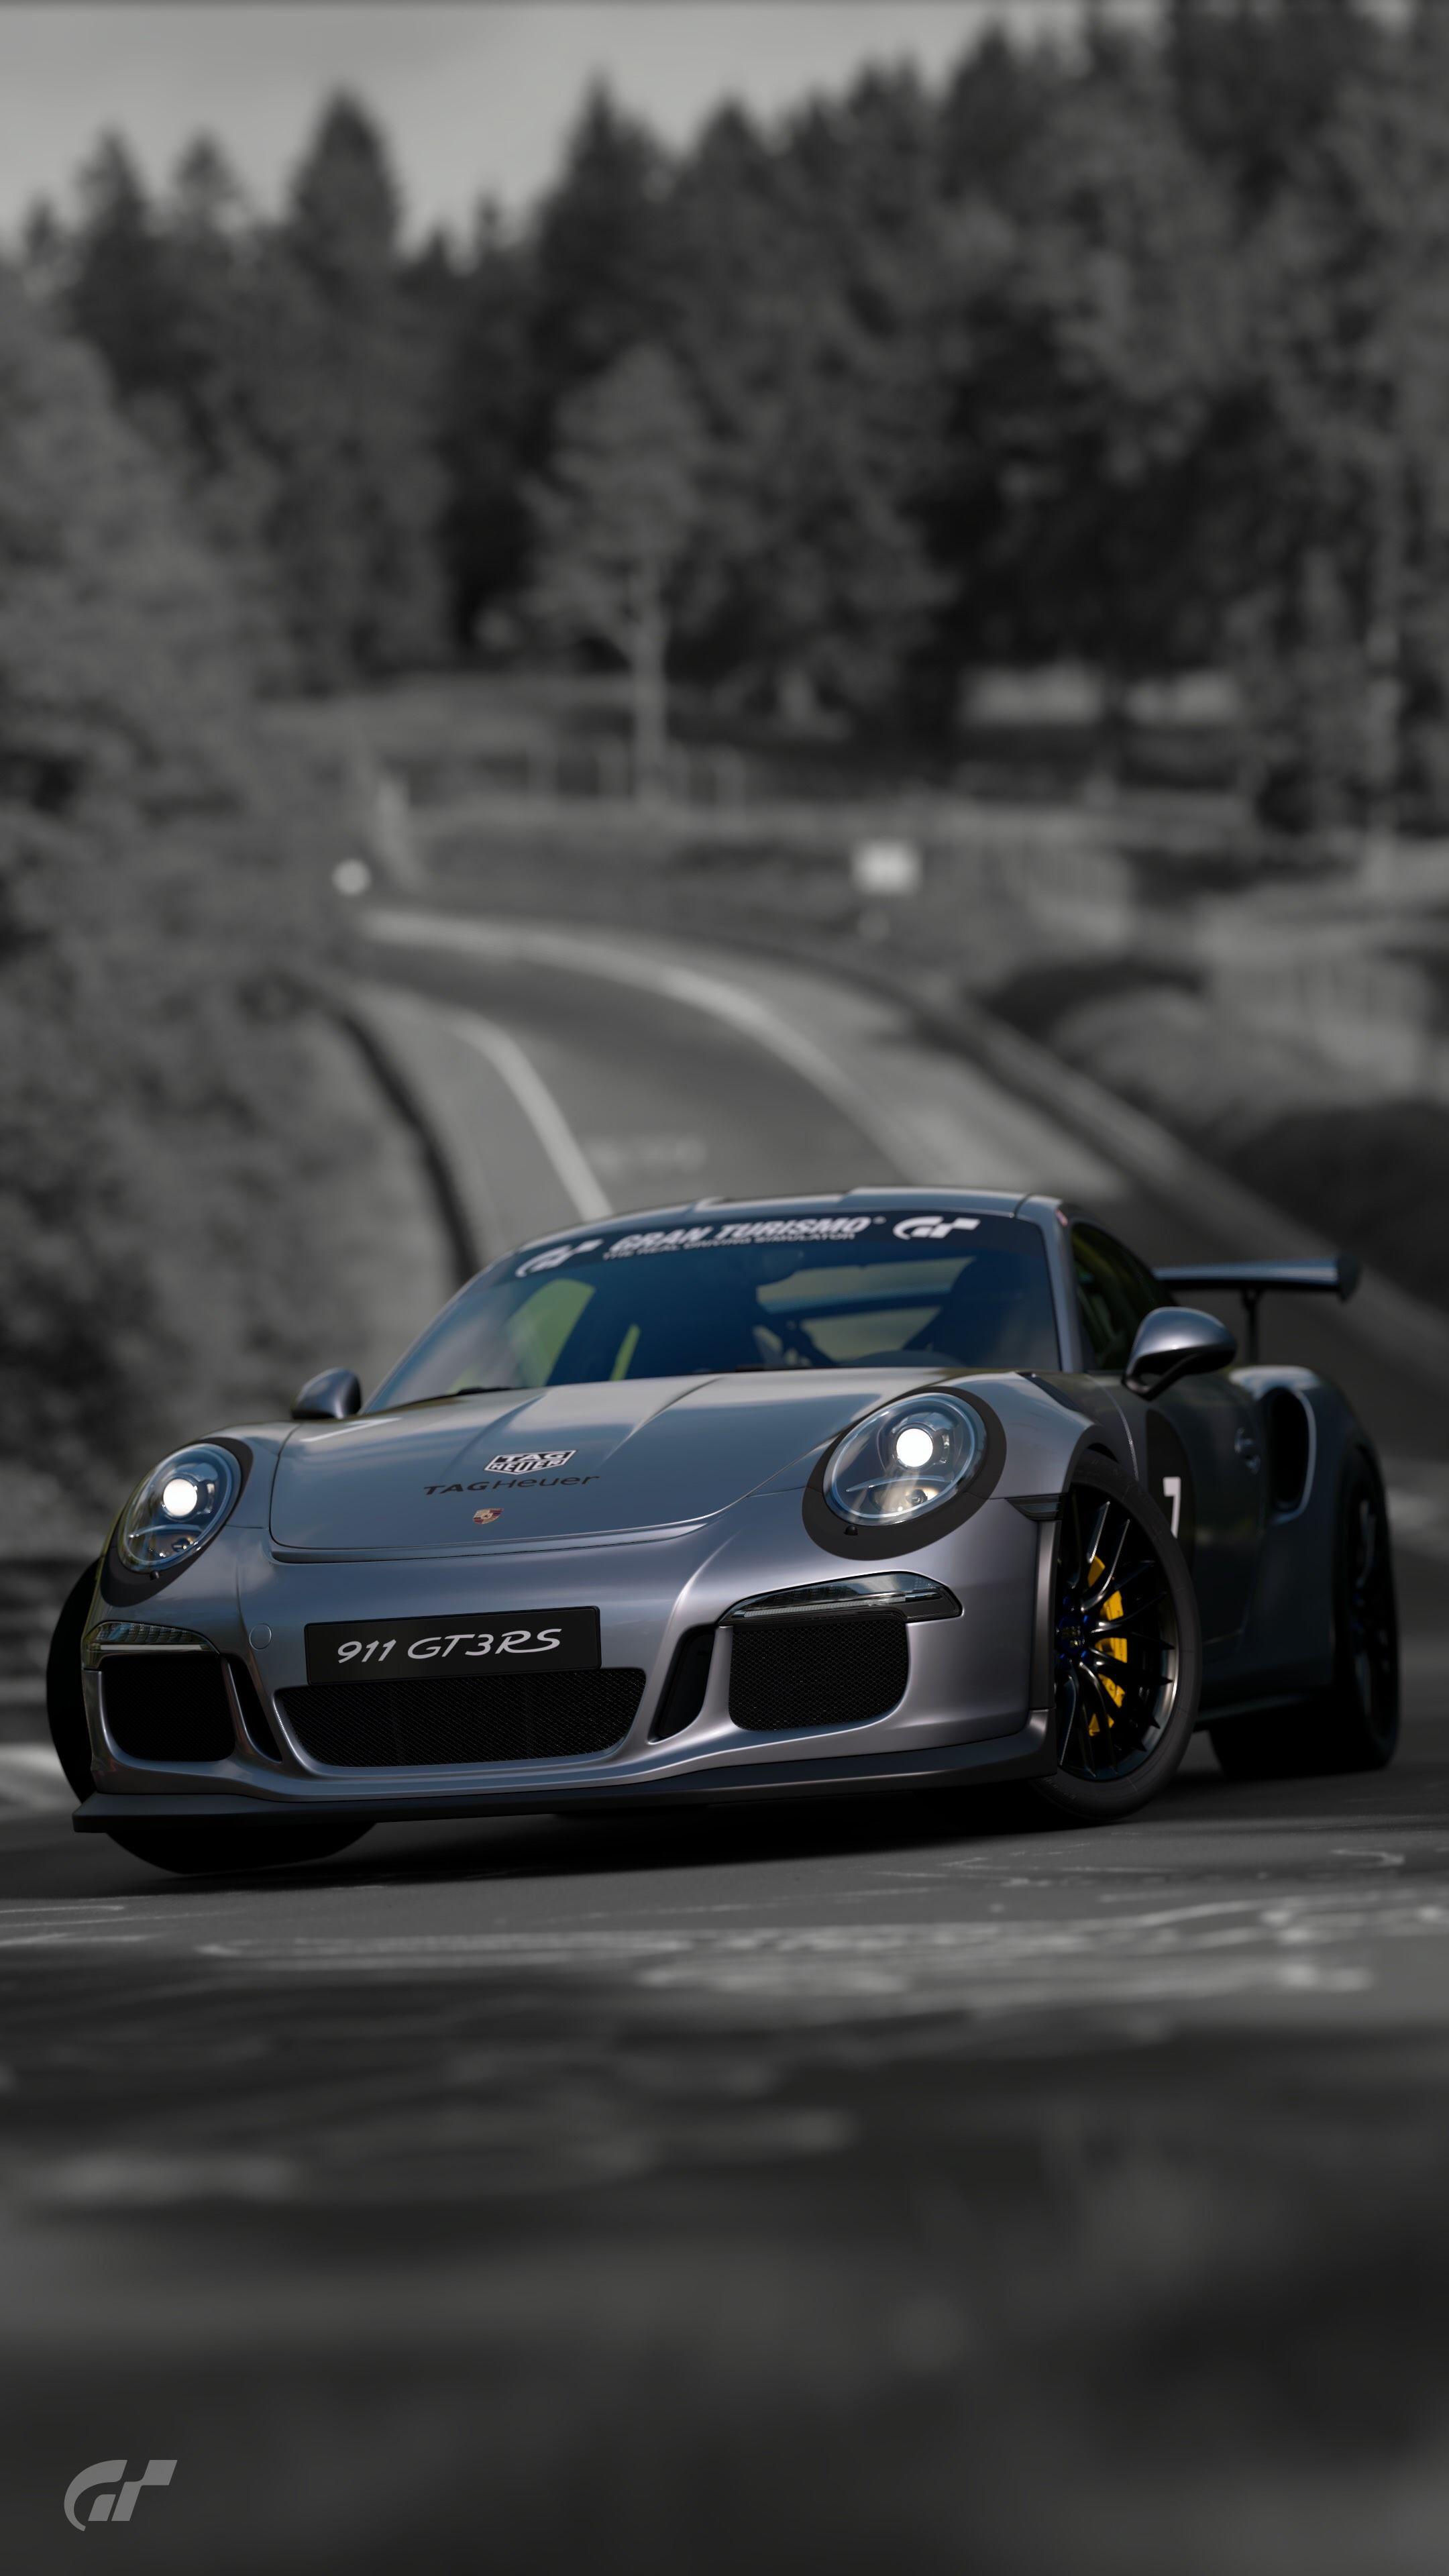 Porsche Gt3 Rs Screensaver, HD Wallpaper & background